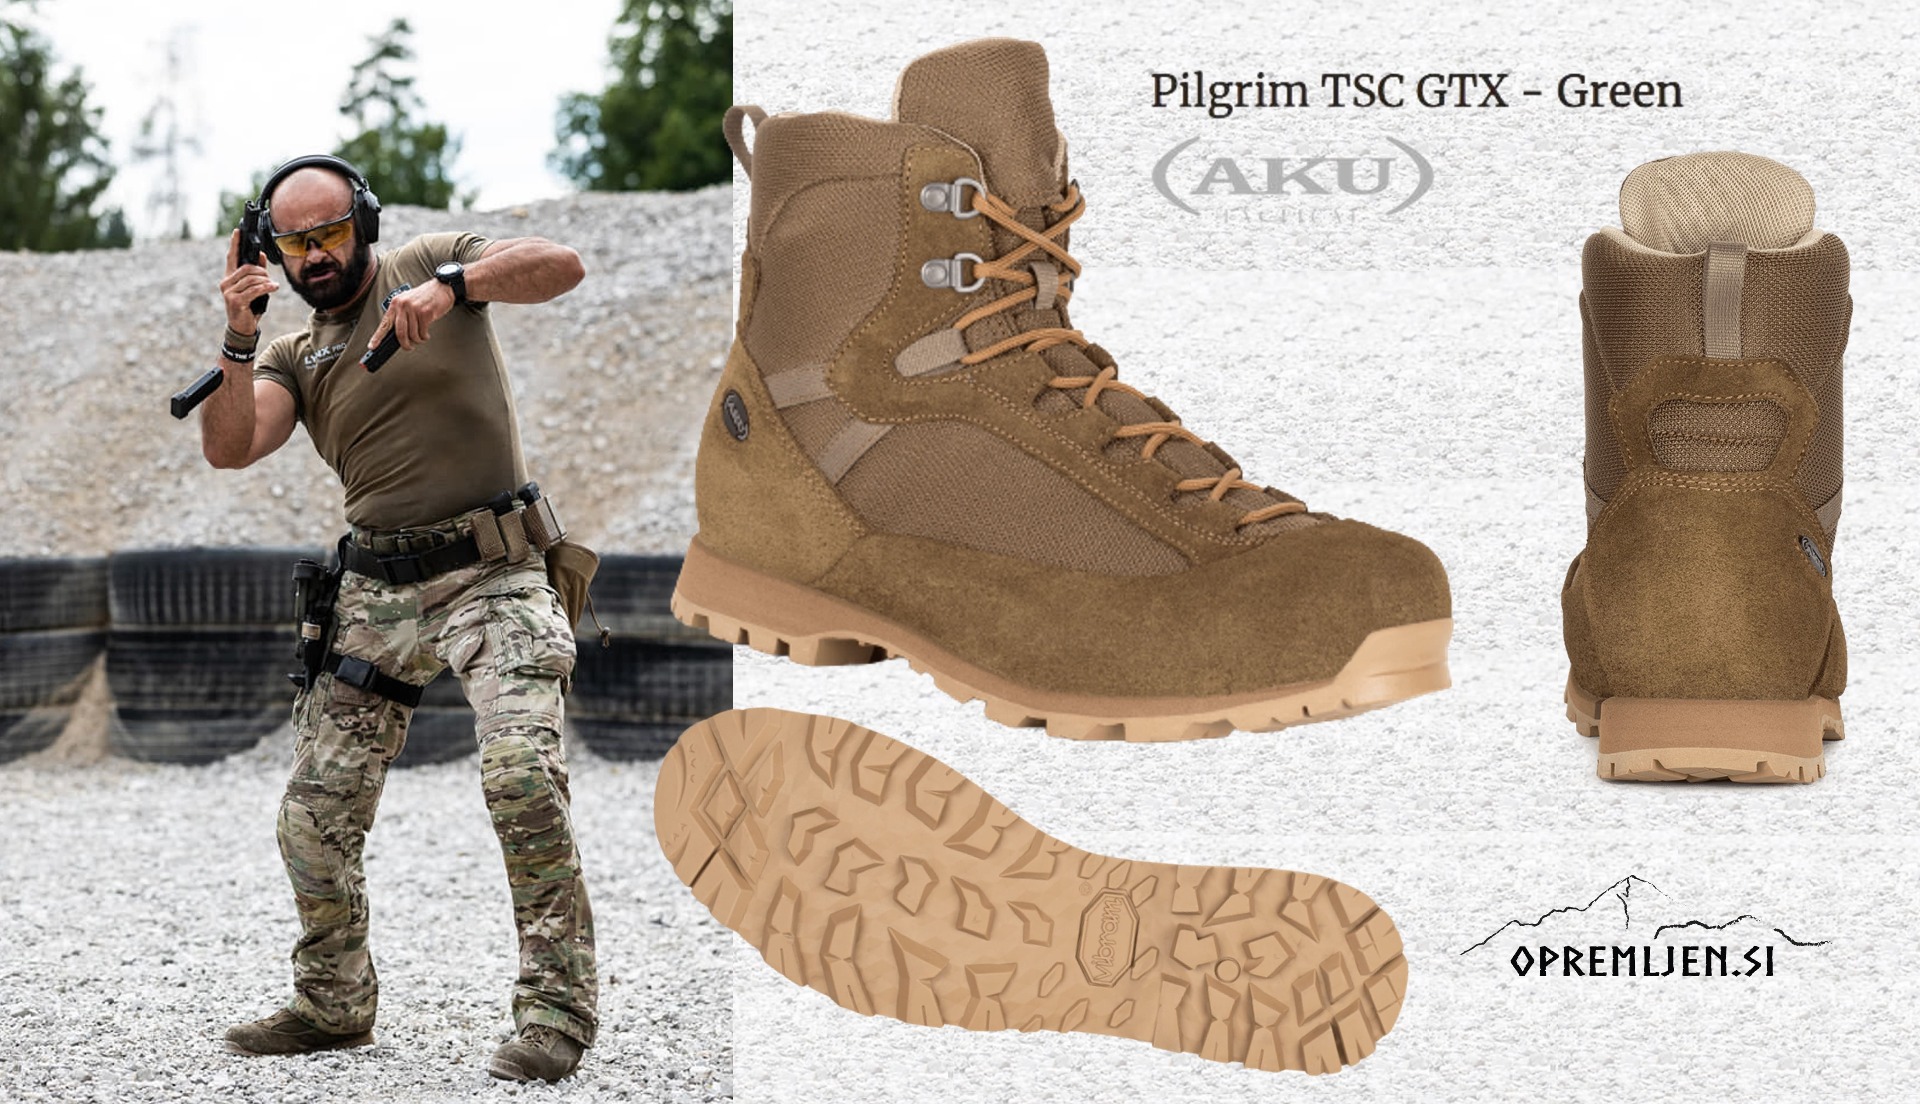 Profesionalna obutev AKU Tactical Pilgrim TSC GTX je idealna za vojaške operacije, specialne enote in terenske aktivnosti. Z visoko zmogljivostjo, udobjem in vzdržljivostjo bo vaše gibanje brezskrbno in varno. Pridobite vrhunsko kakovost in zanesljivost s